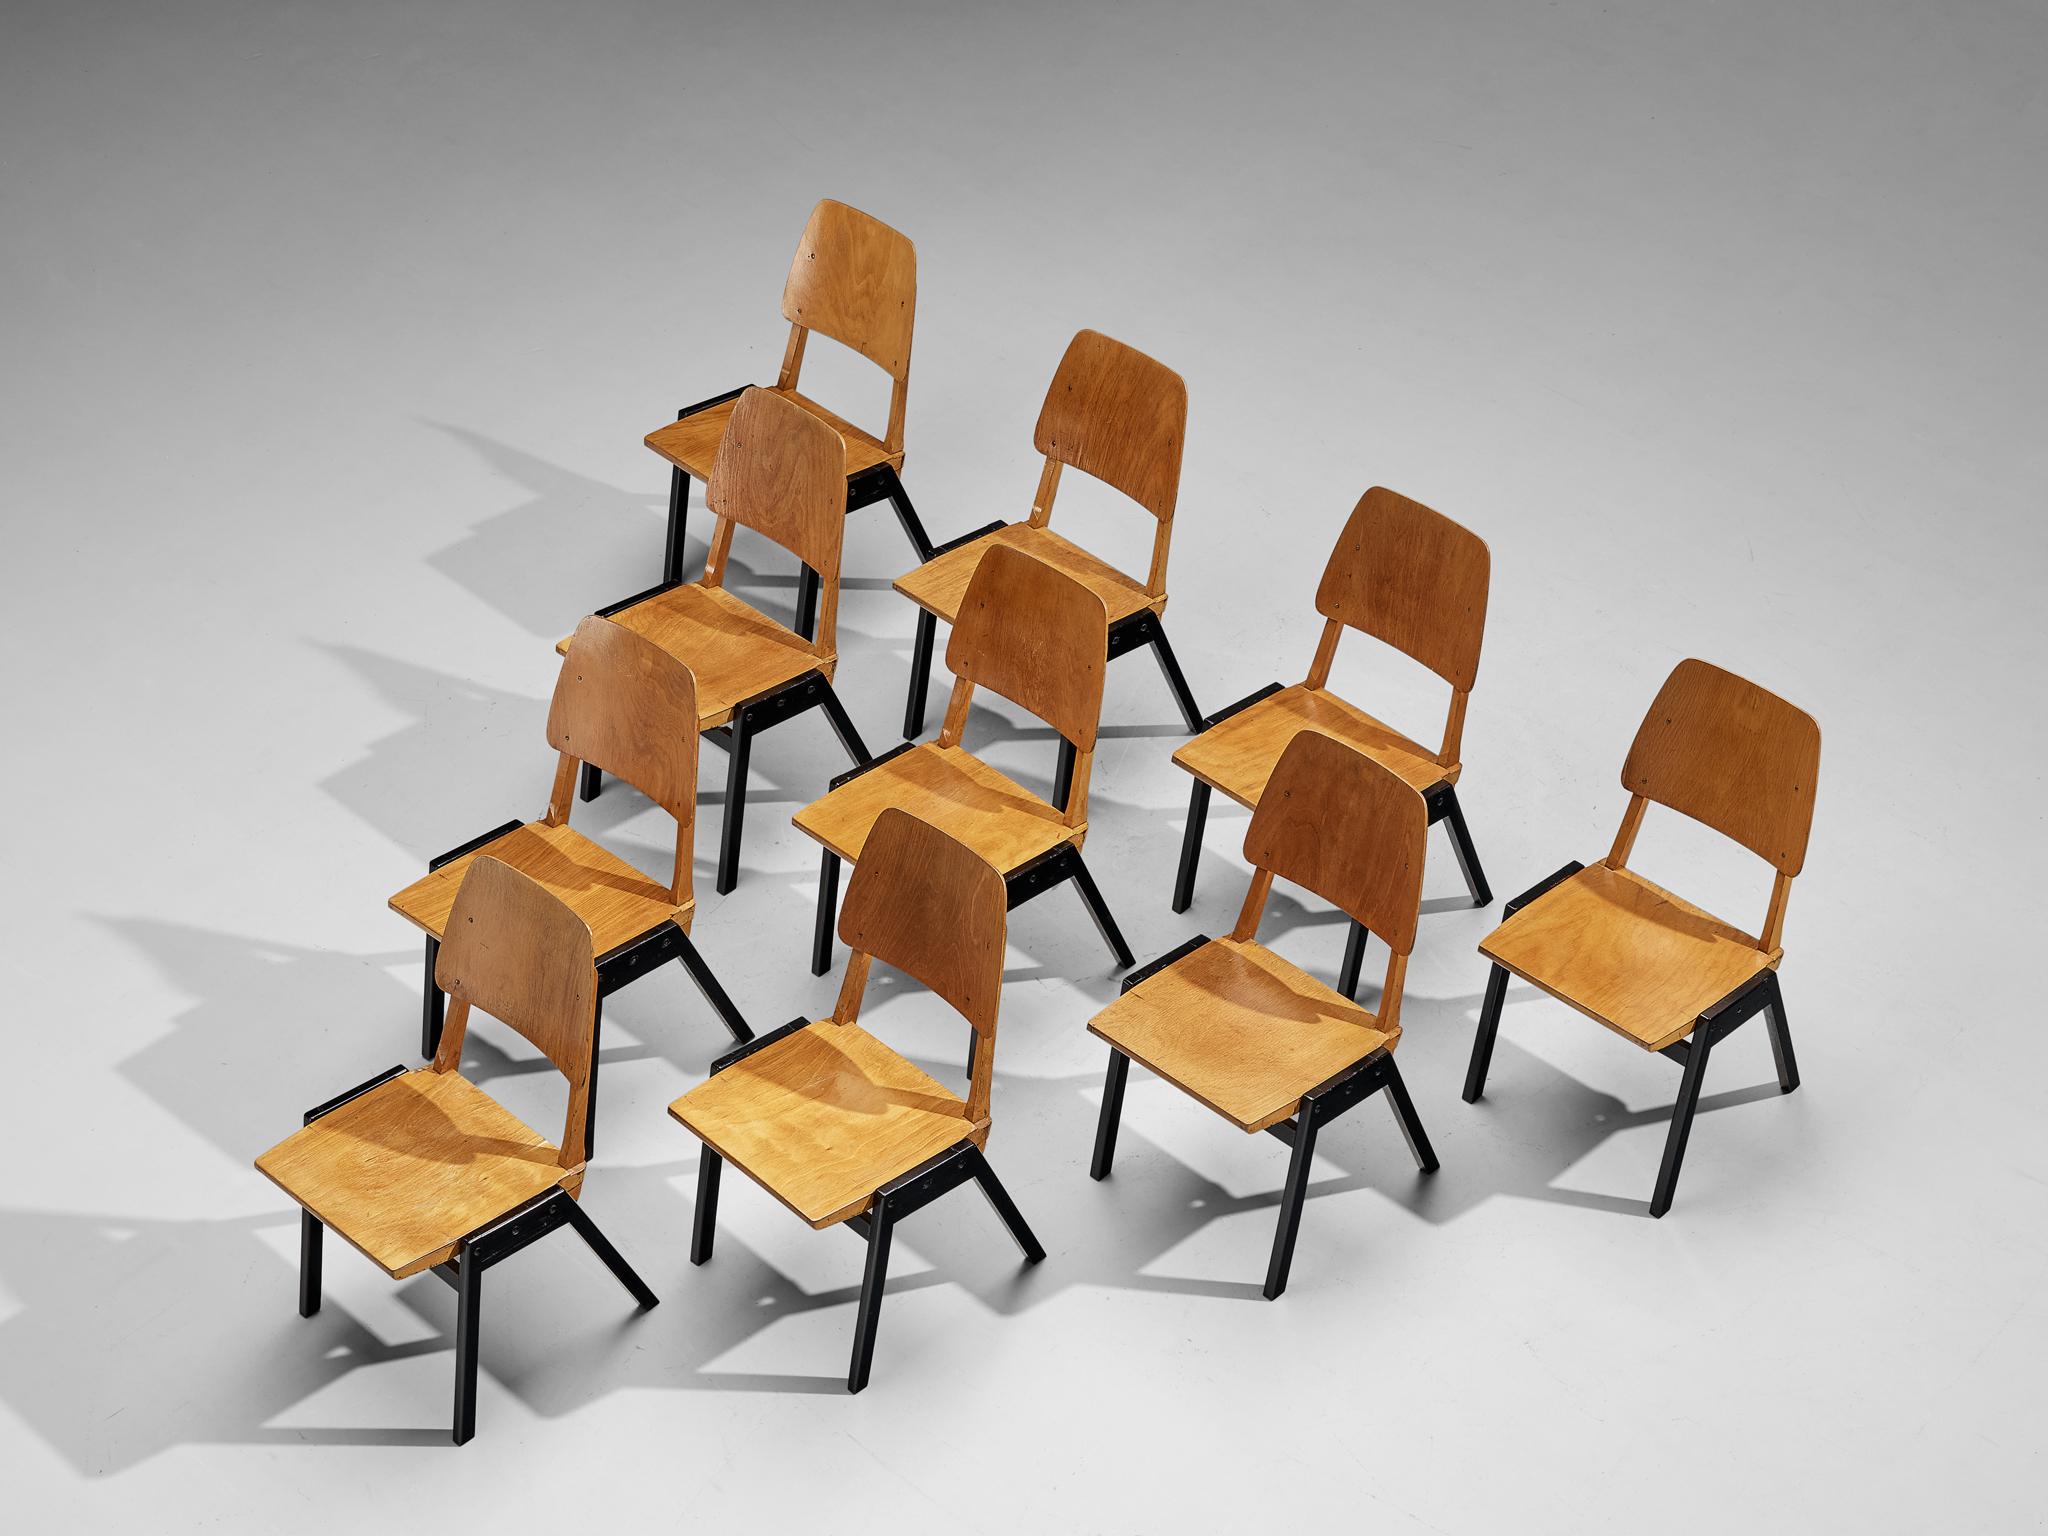 Roland Rainer, chaises de salle à manger, hêtre teinté, hêtre laqué, Autriche, années 1950

Ces chaises de salle à manger ont un design minimaliste, se distinguant par un style de construction ouvert mettant l'accent sur les détails constructifs. La